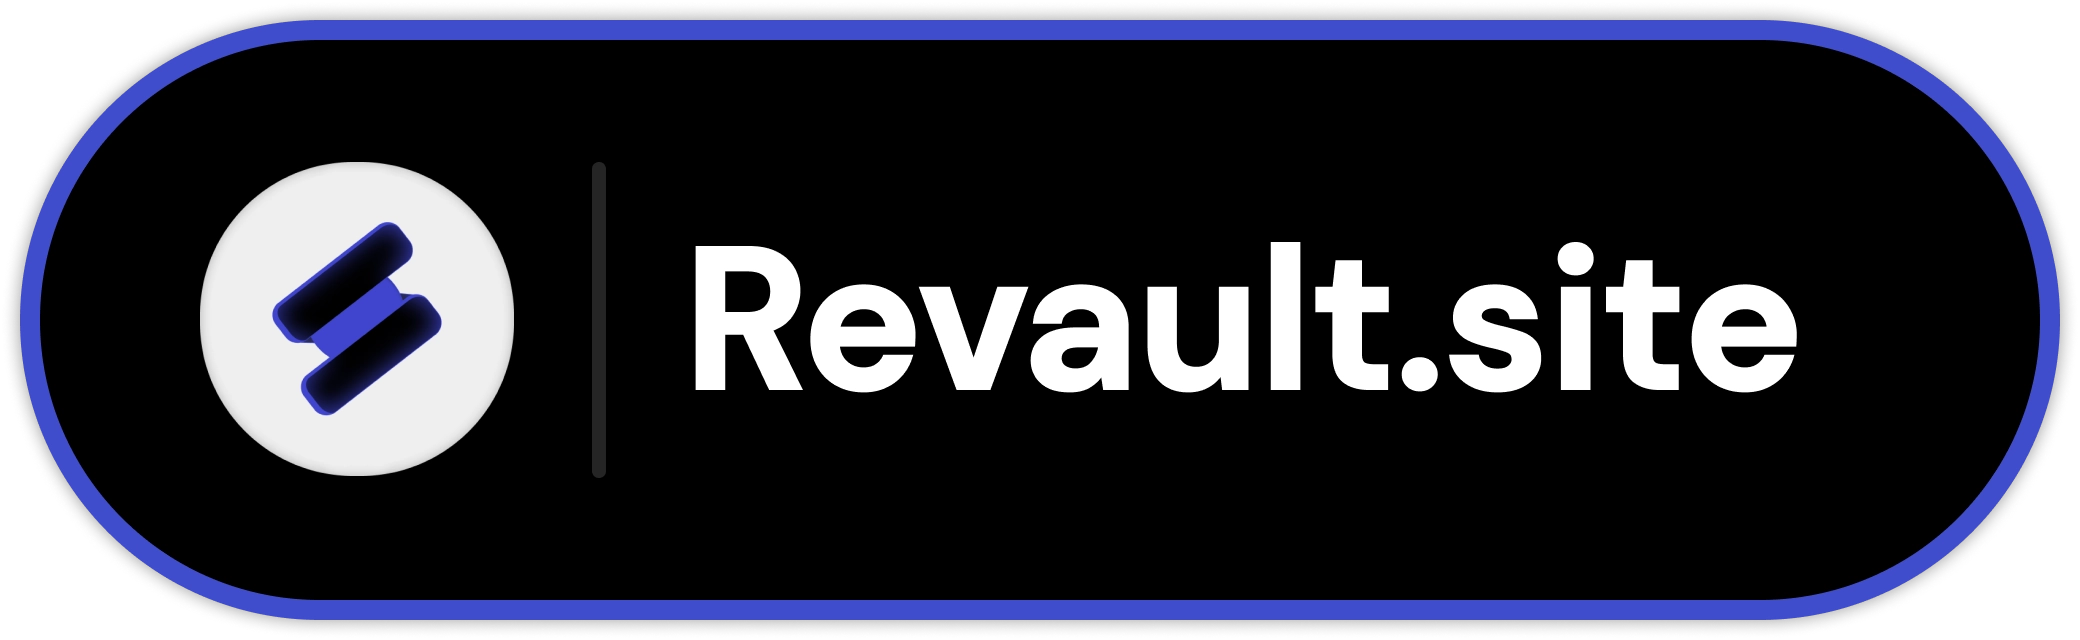 Revault.site-logo-full